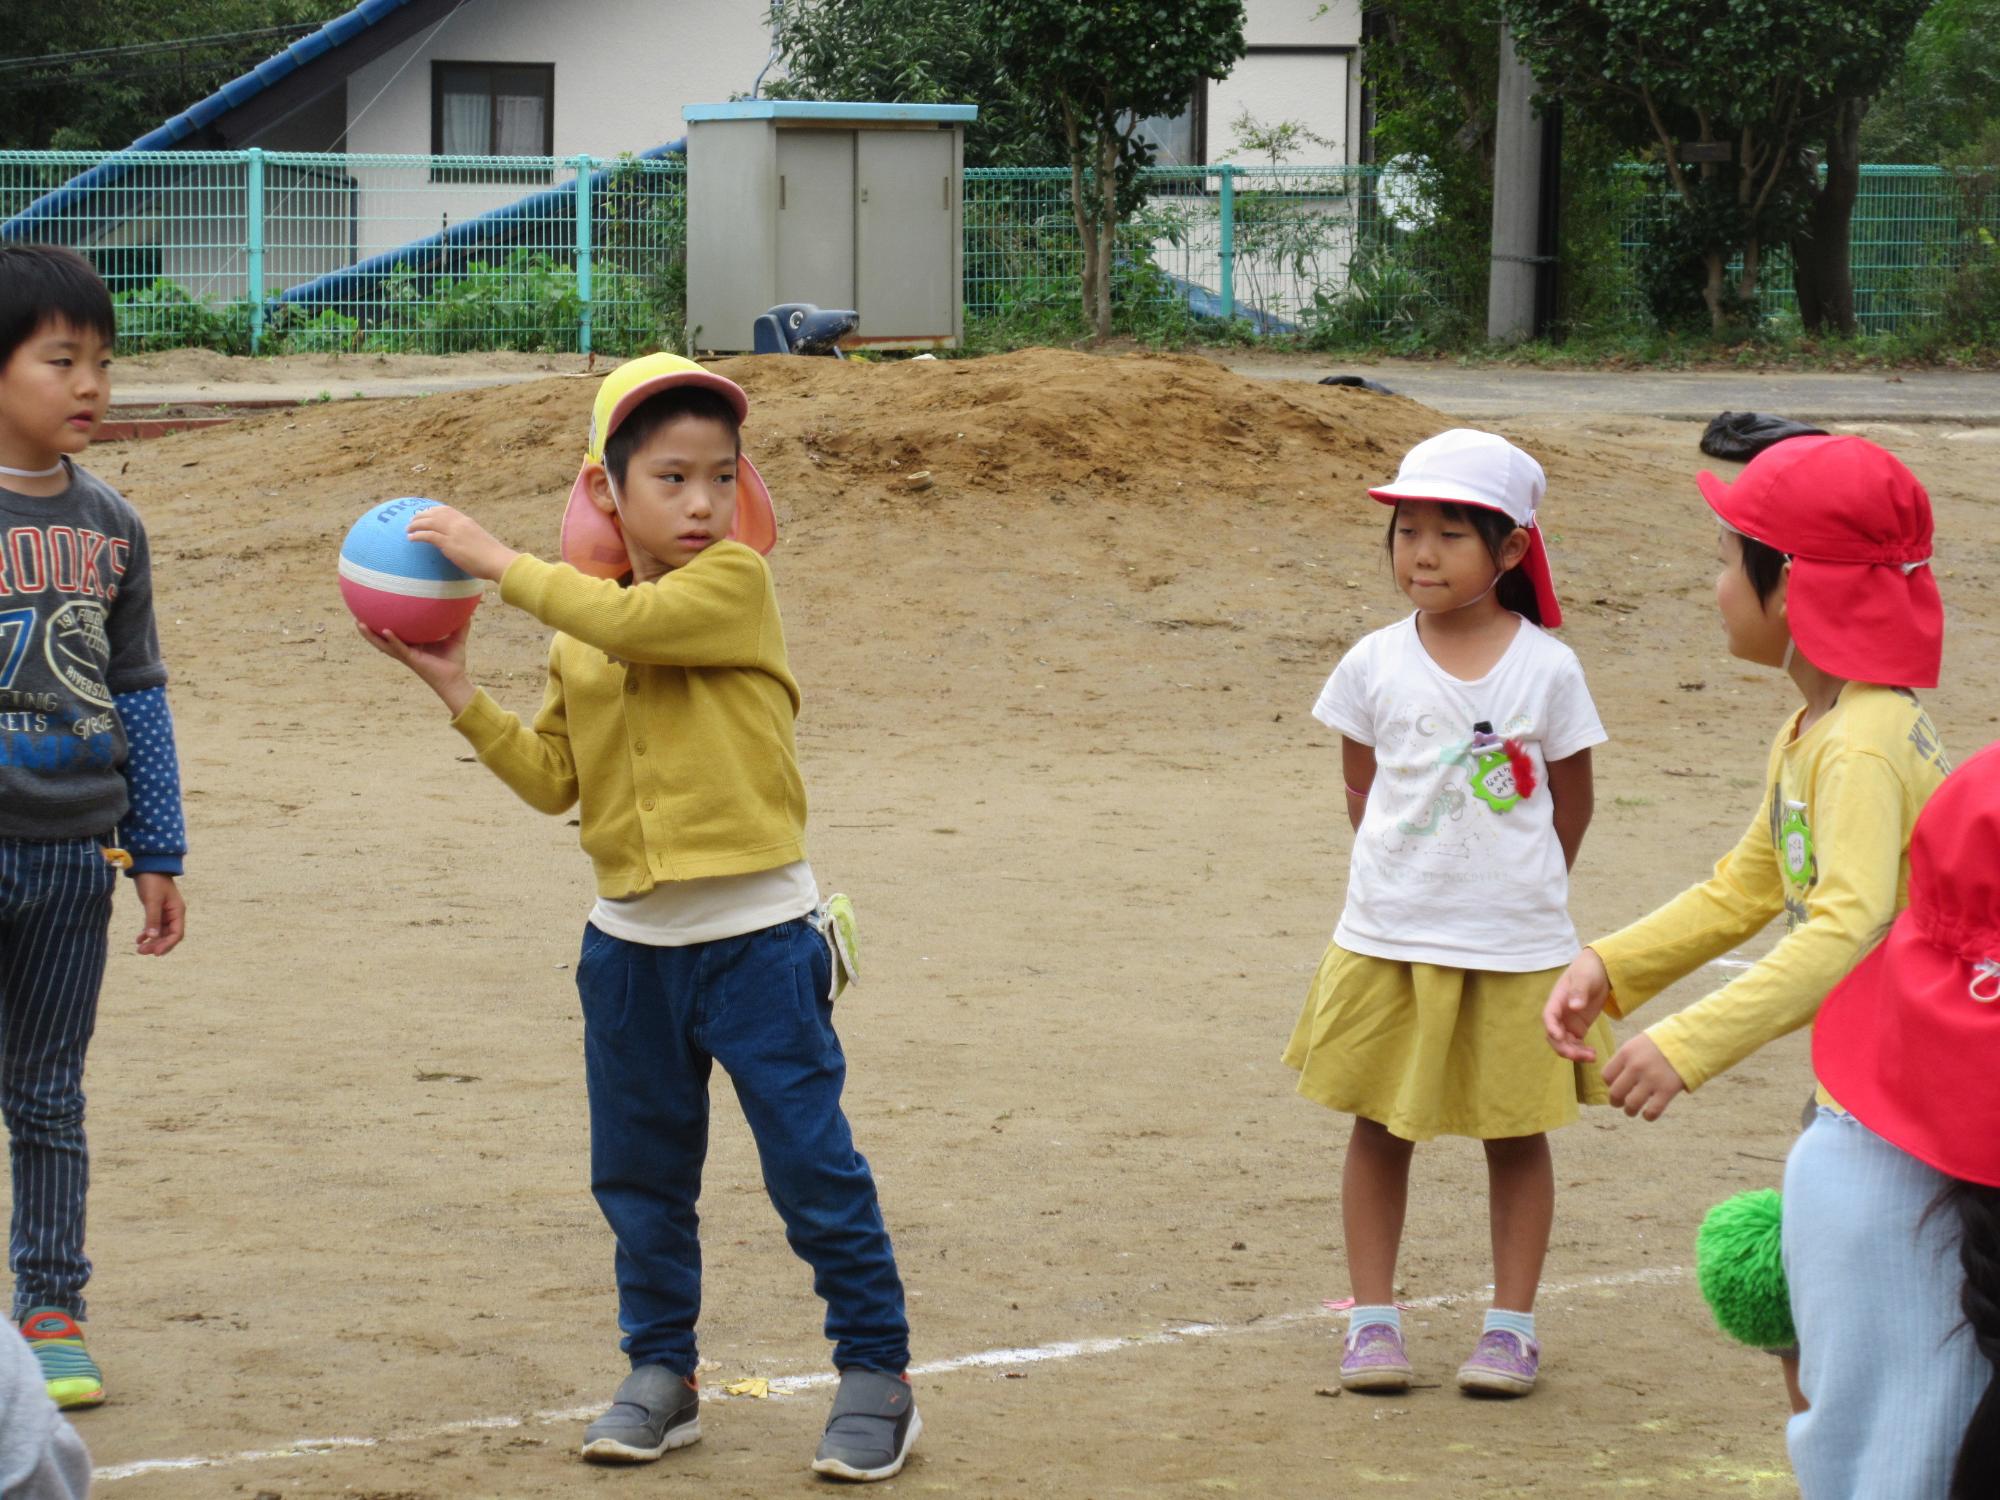 黄色の帽子を被った園児がボールを両手で投げようとしている写真